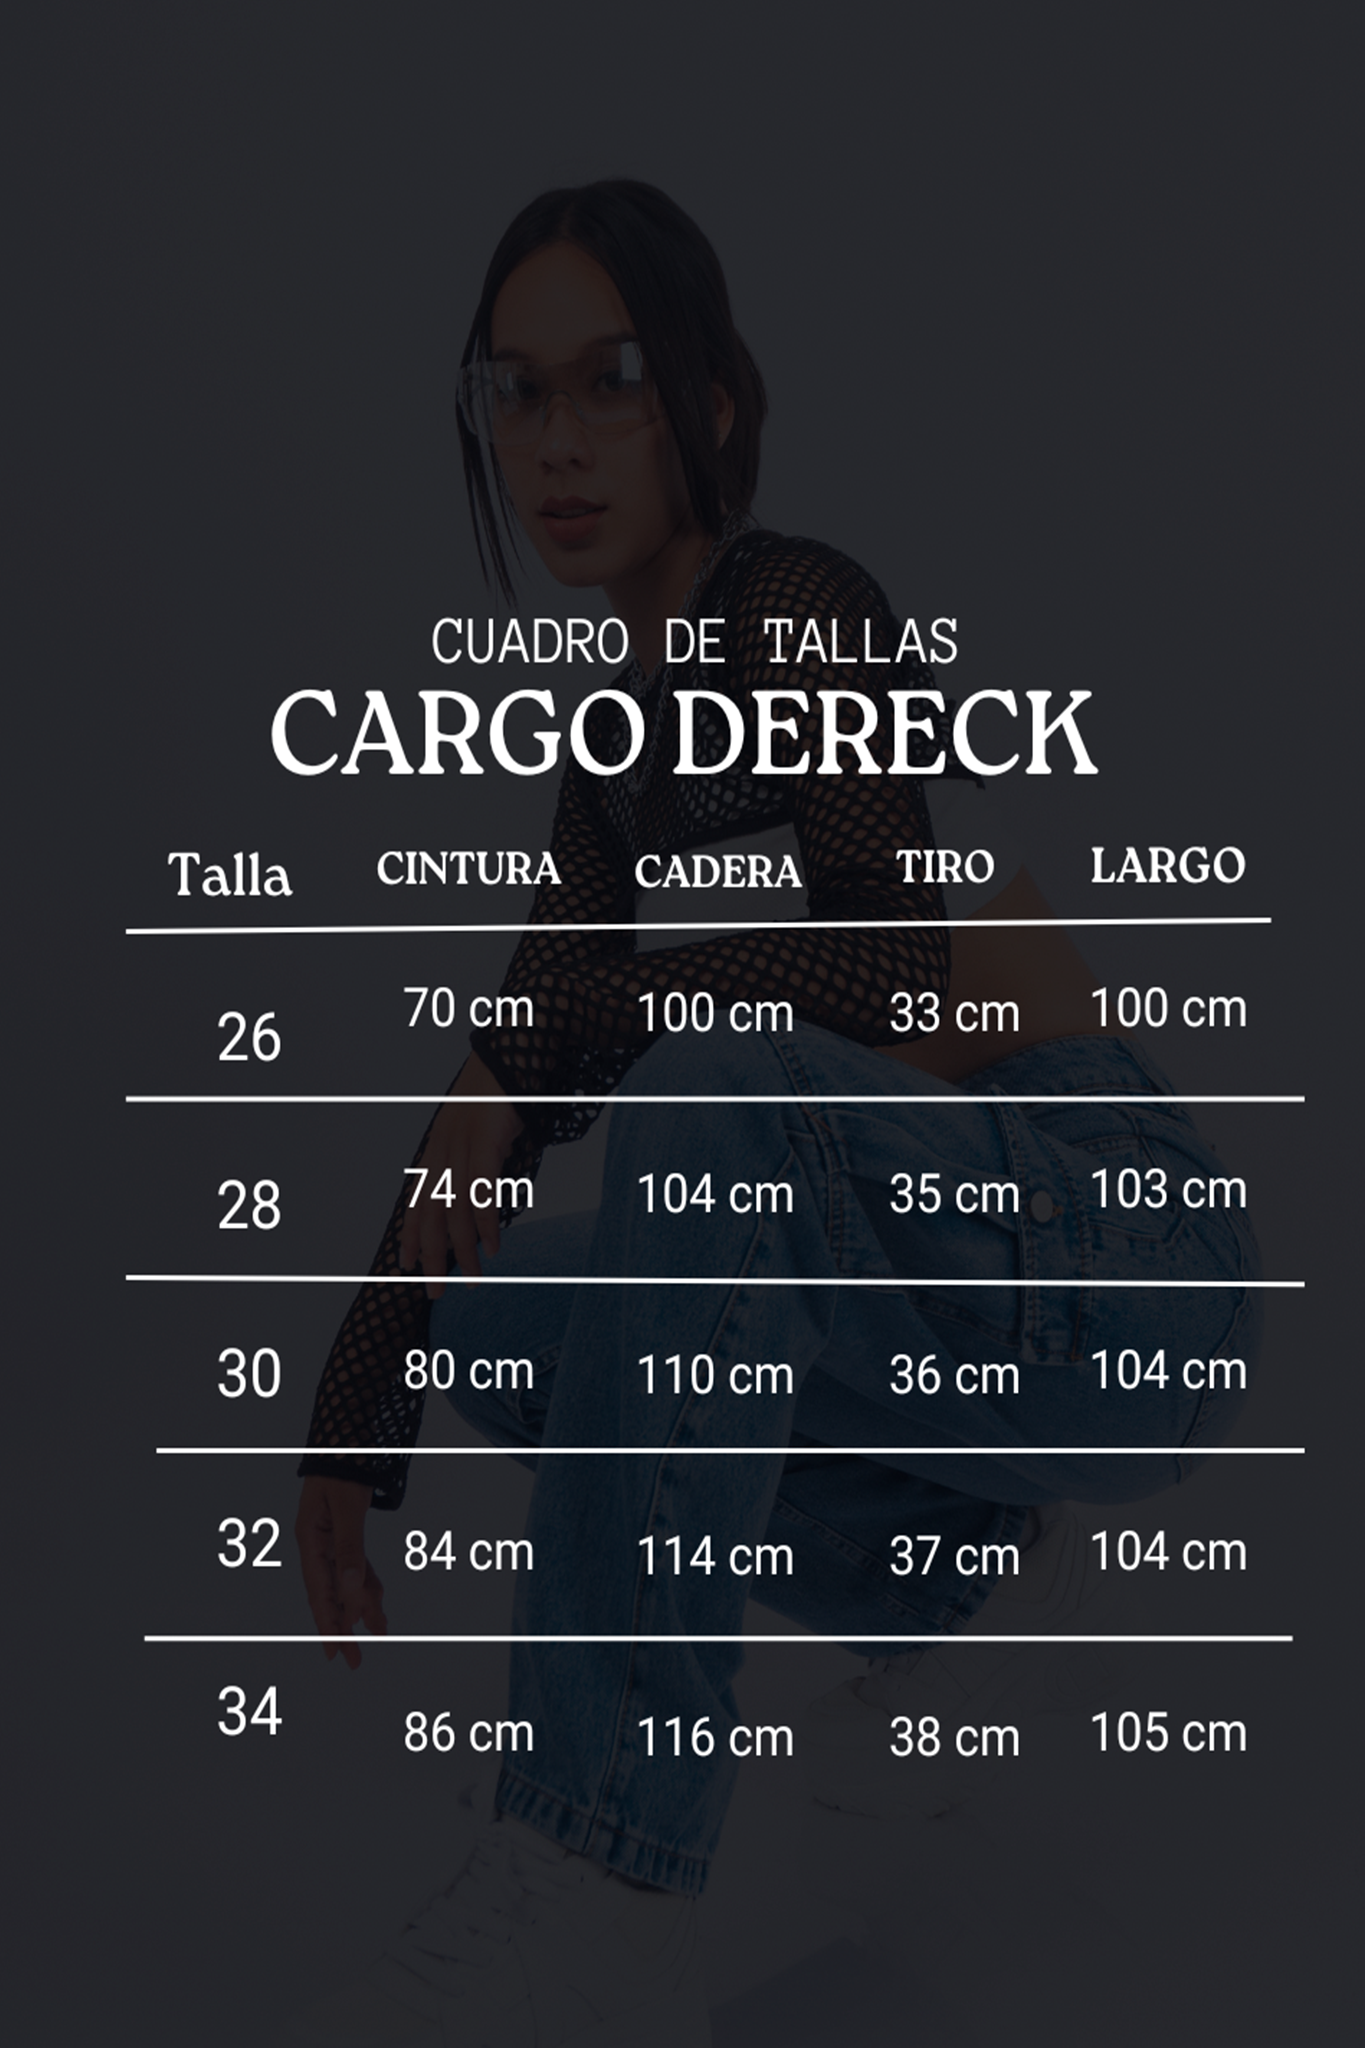 Cargo Dereck - Ice